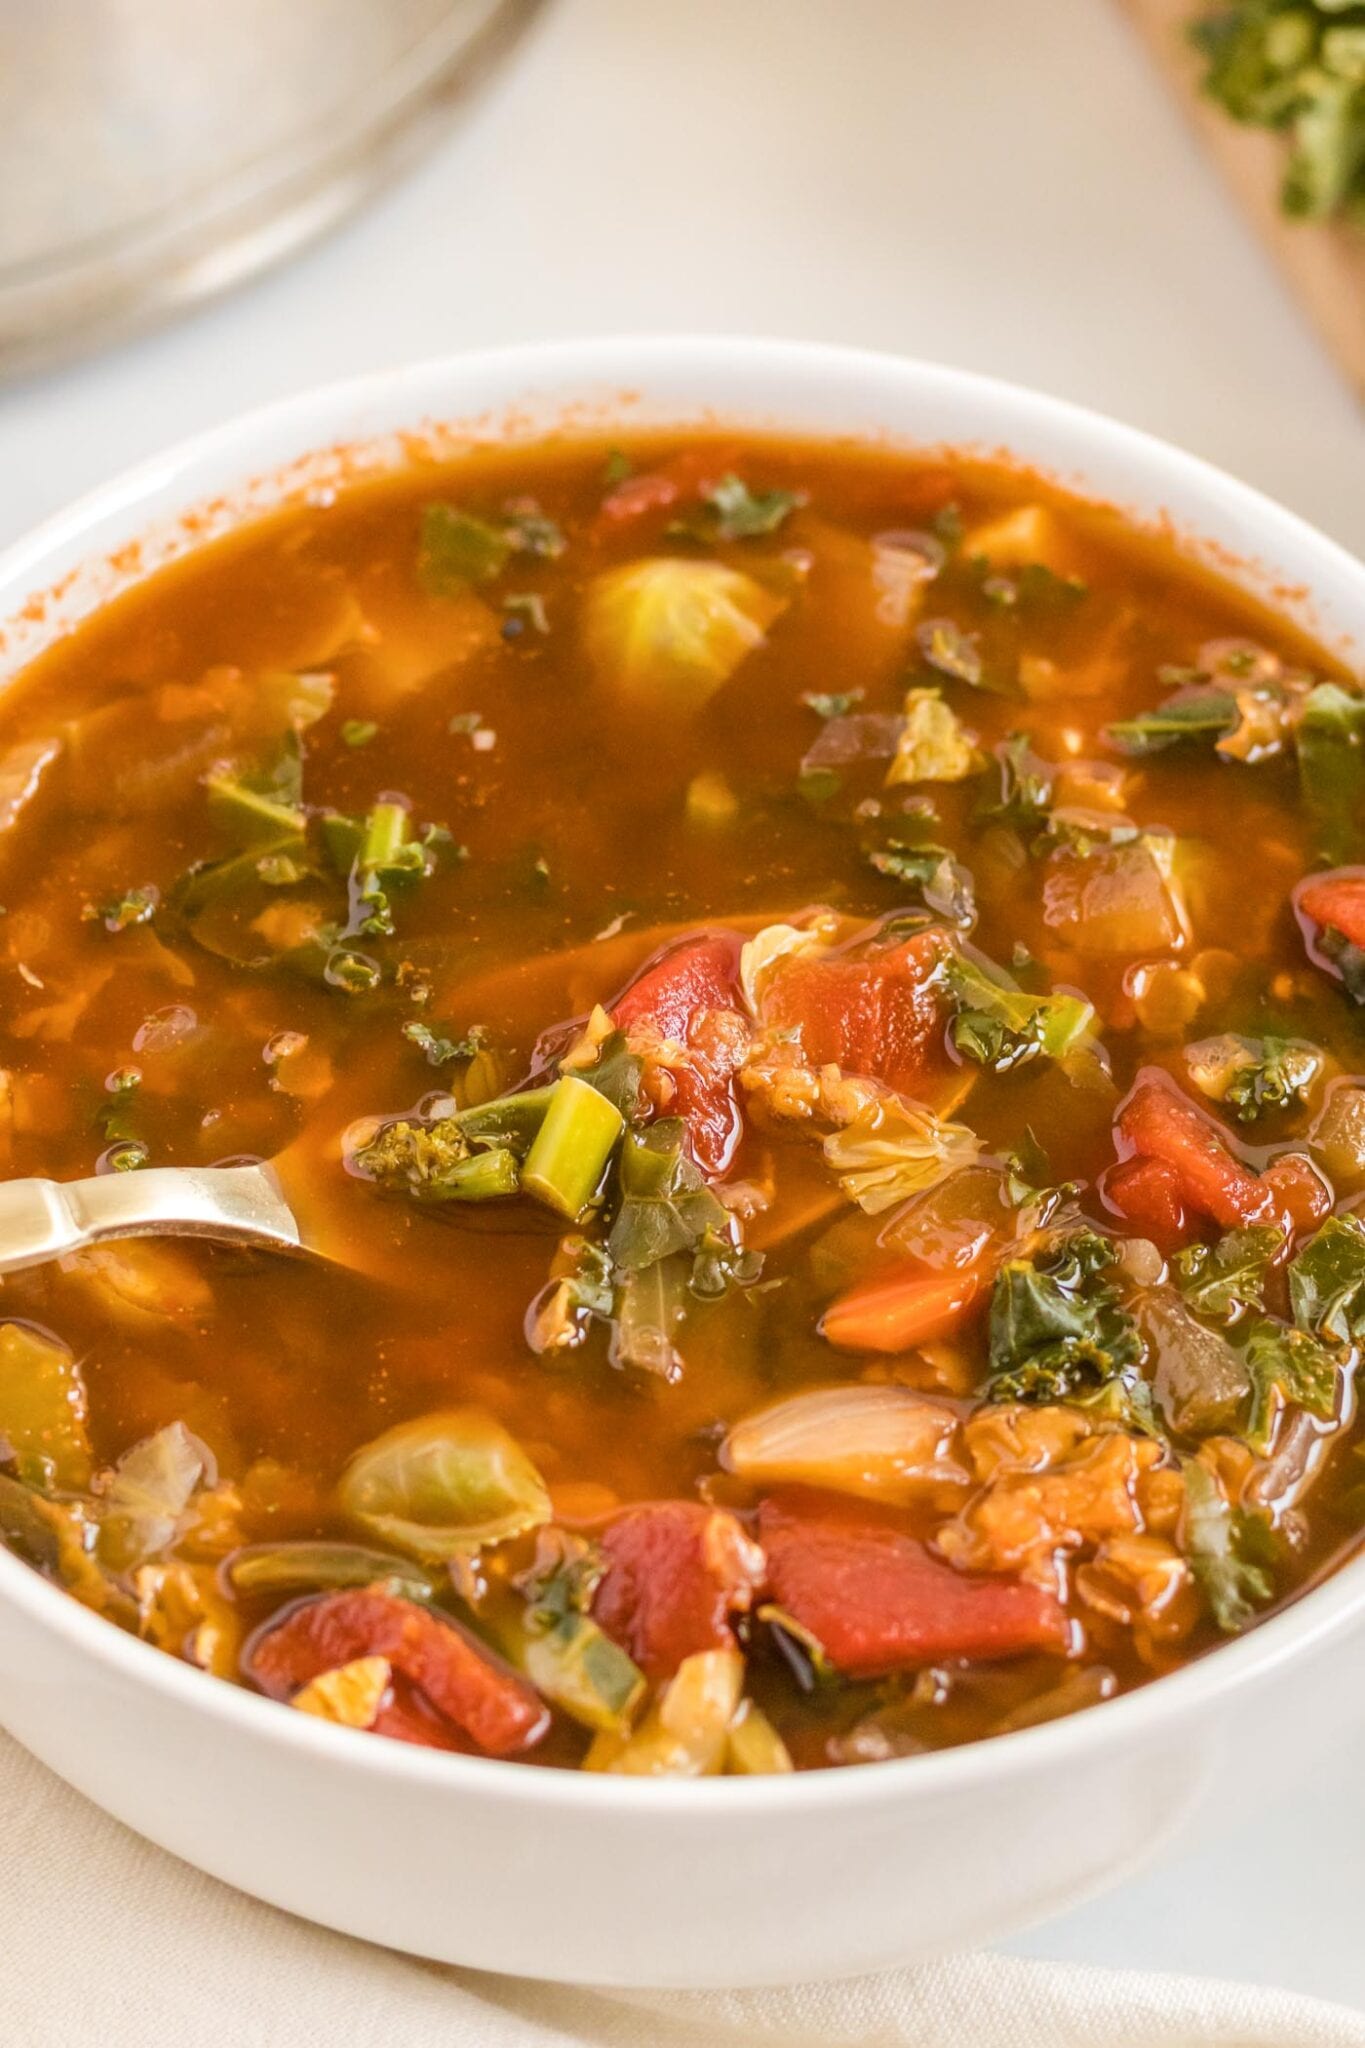 Vegan Kale Red Lentil Soup - Running on Real Food